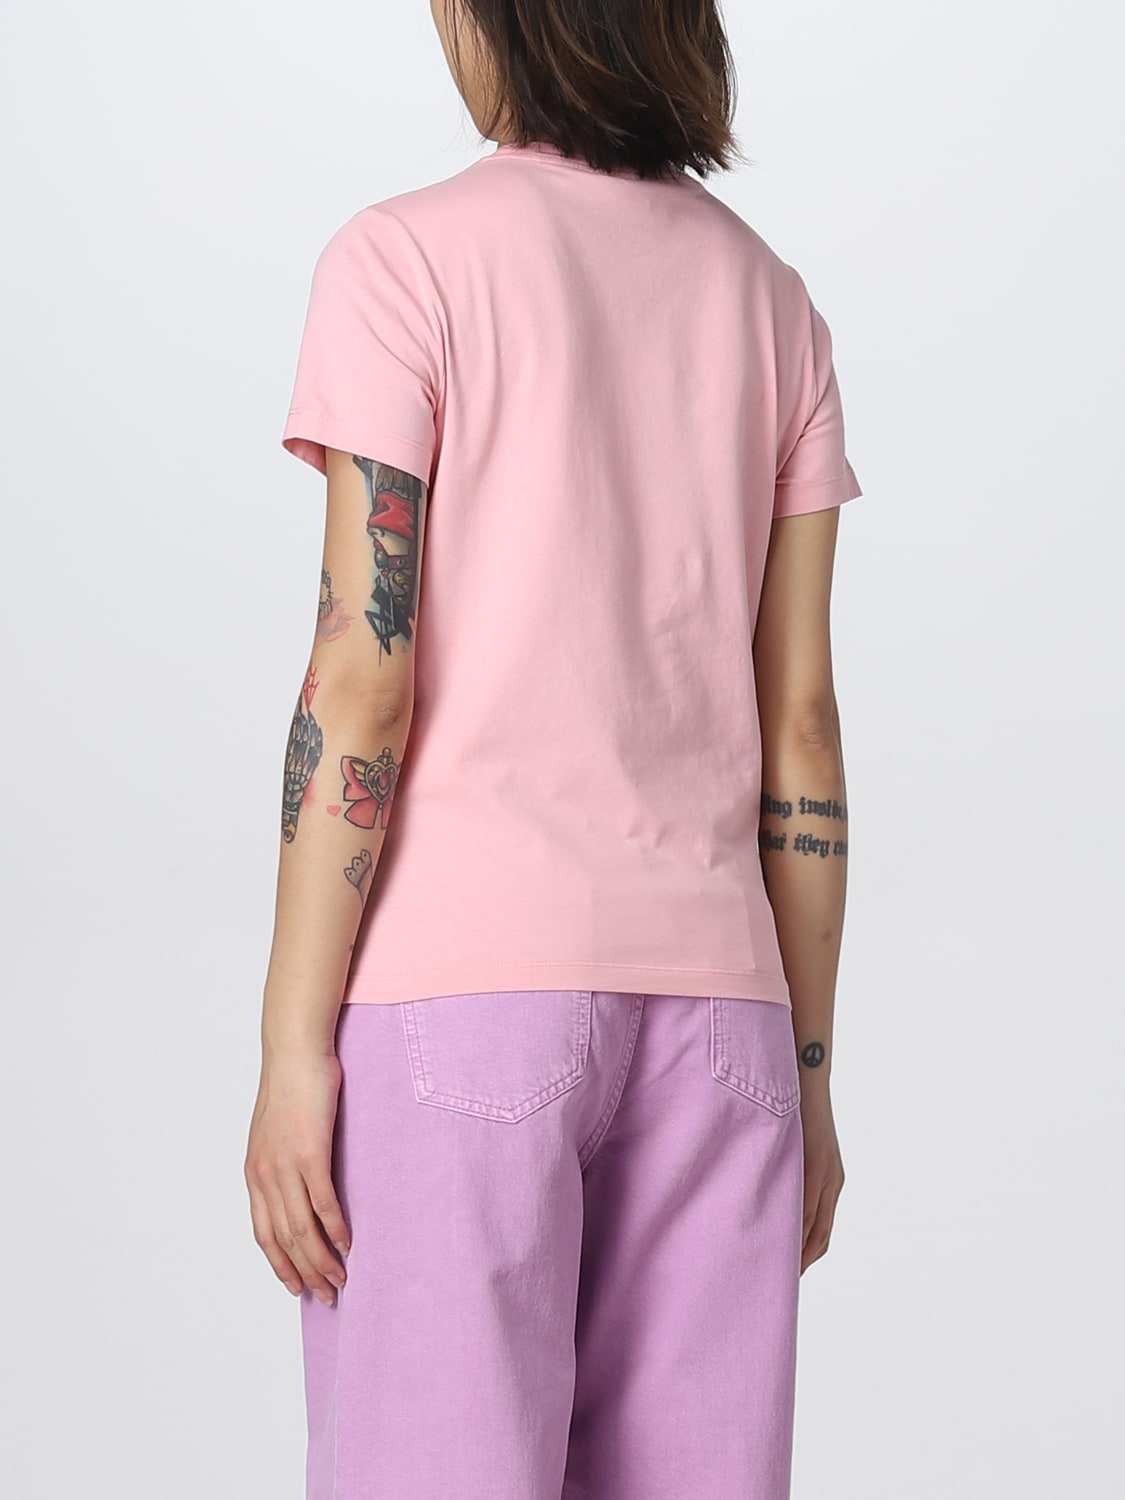 T-shirt Kenzo: T-shirt Boke Flower Kenzo in cotone rosa 2